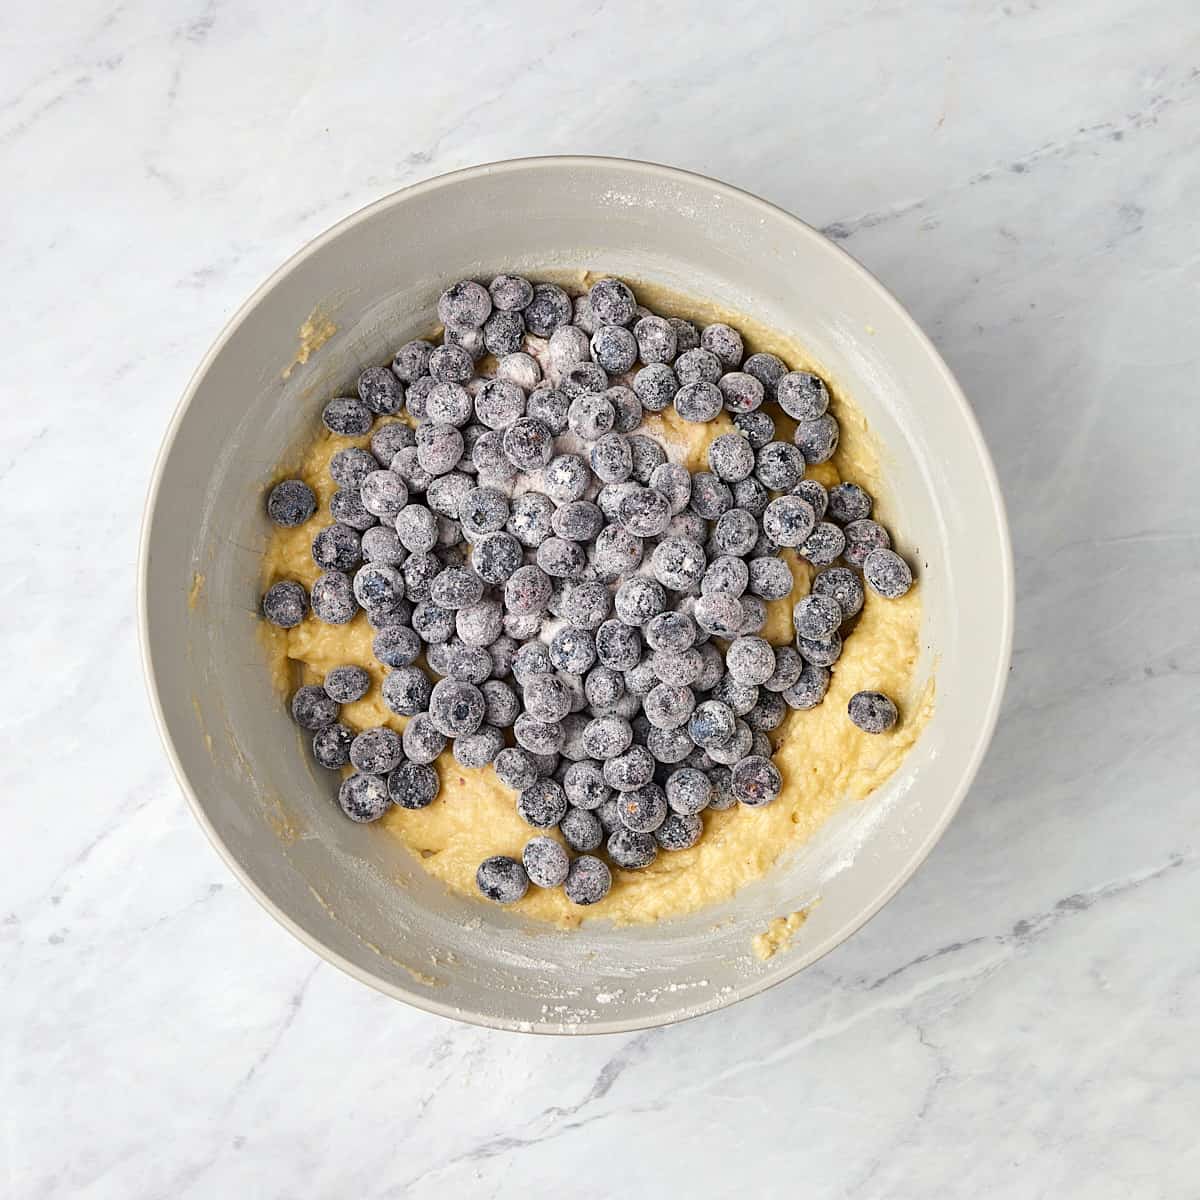 floured blueberries added to cake batter.